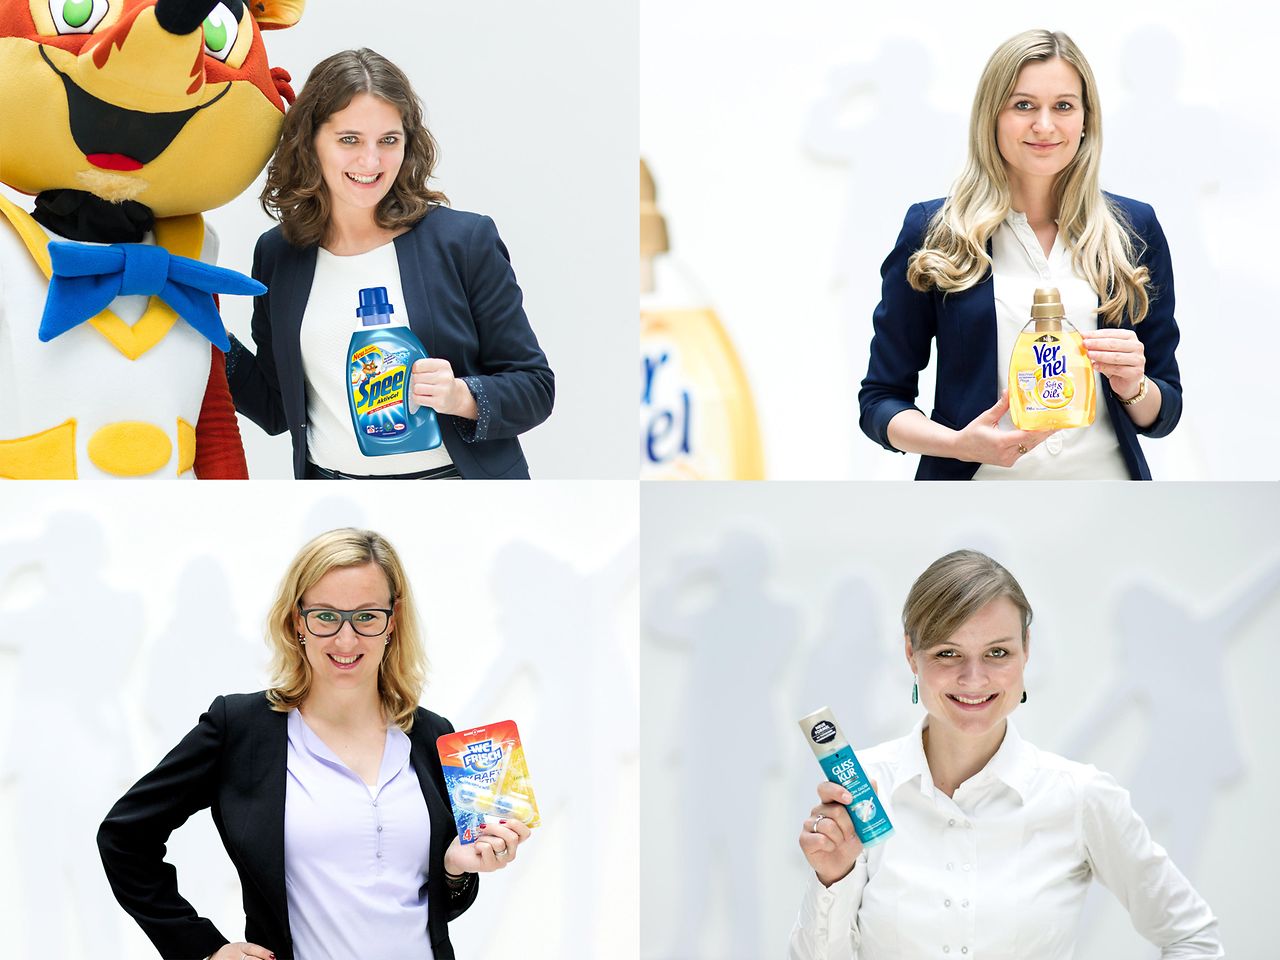 Vier Top-Marken von Henkel: Die Brand Manager von Spee, Vernel, WC Frisch und Gliss Kur freuen sich über die Auszeichnung